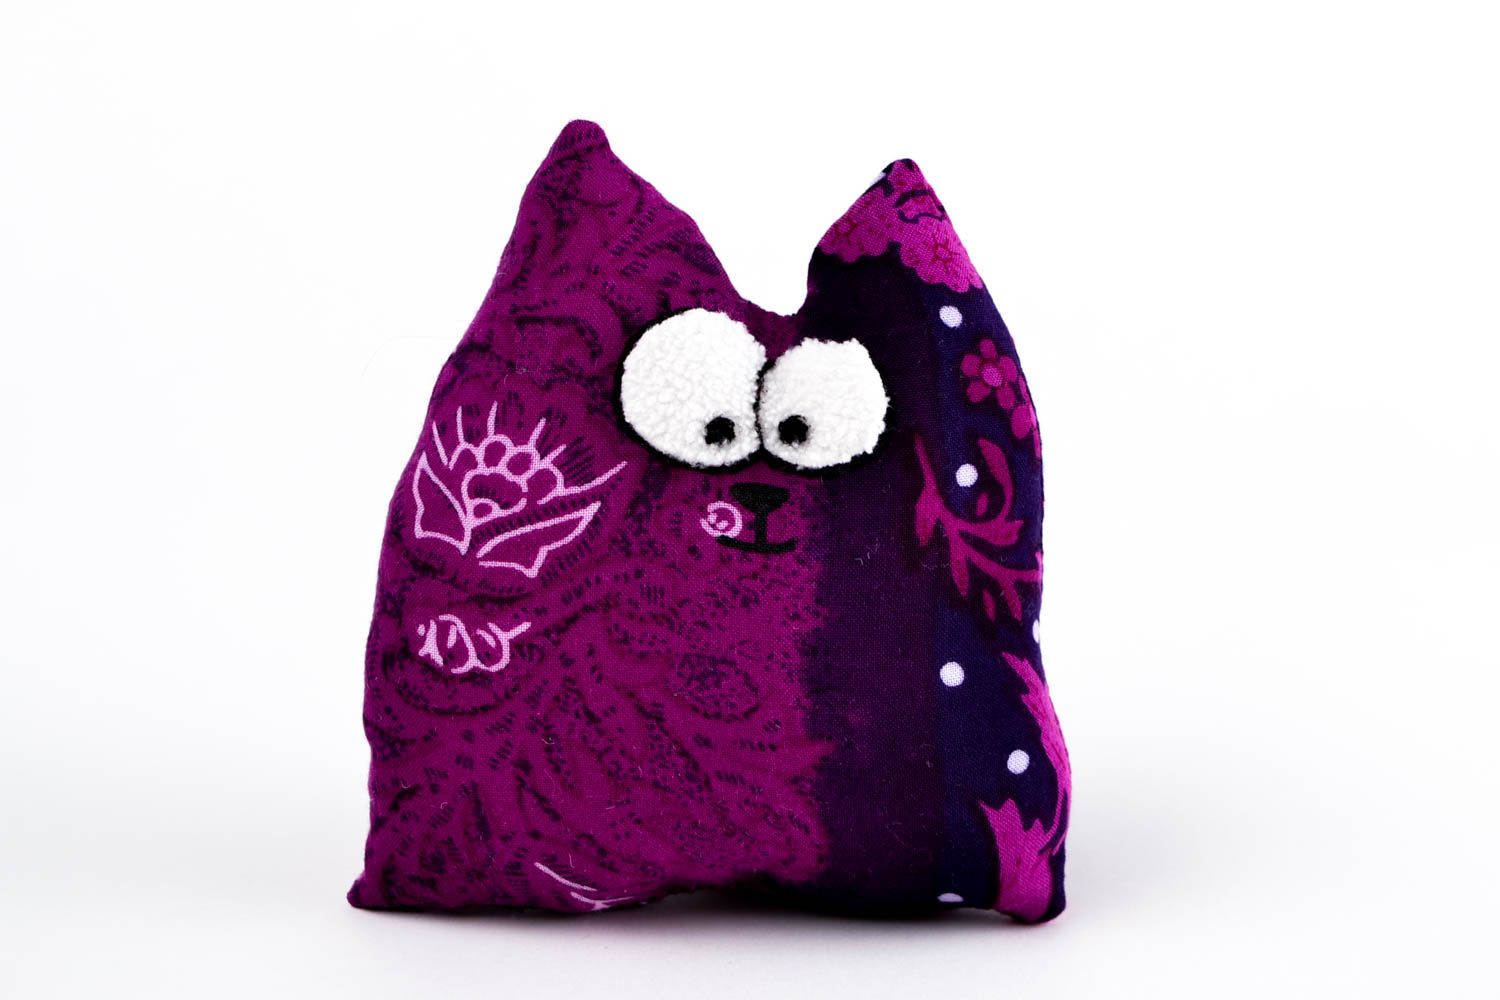 Spielzeug aus Stoff handmade Katze Kuscheltier violett Plüschtier Katze toll foto 5